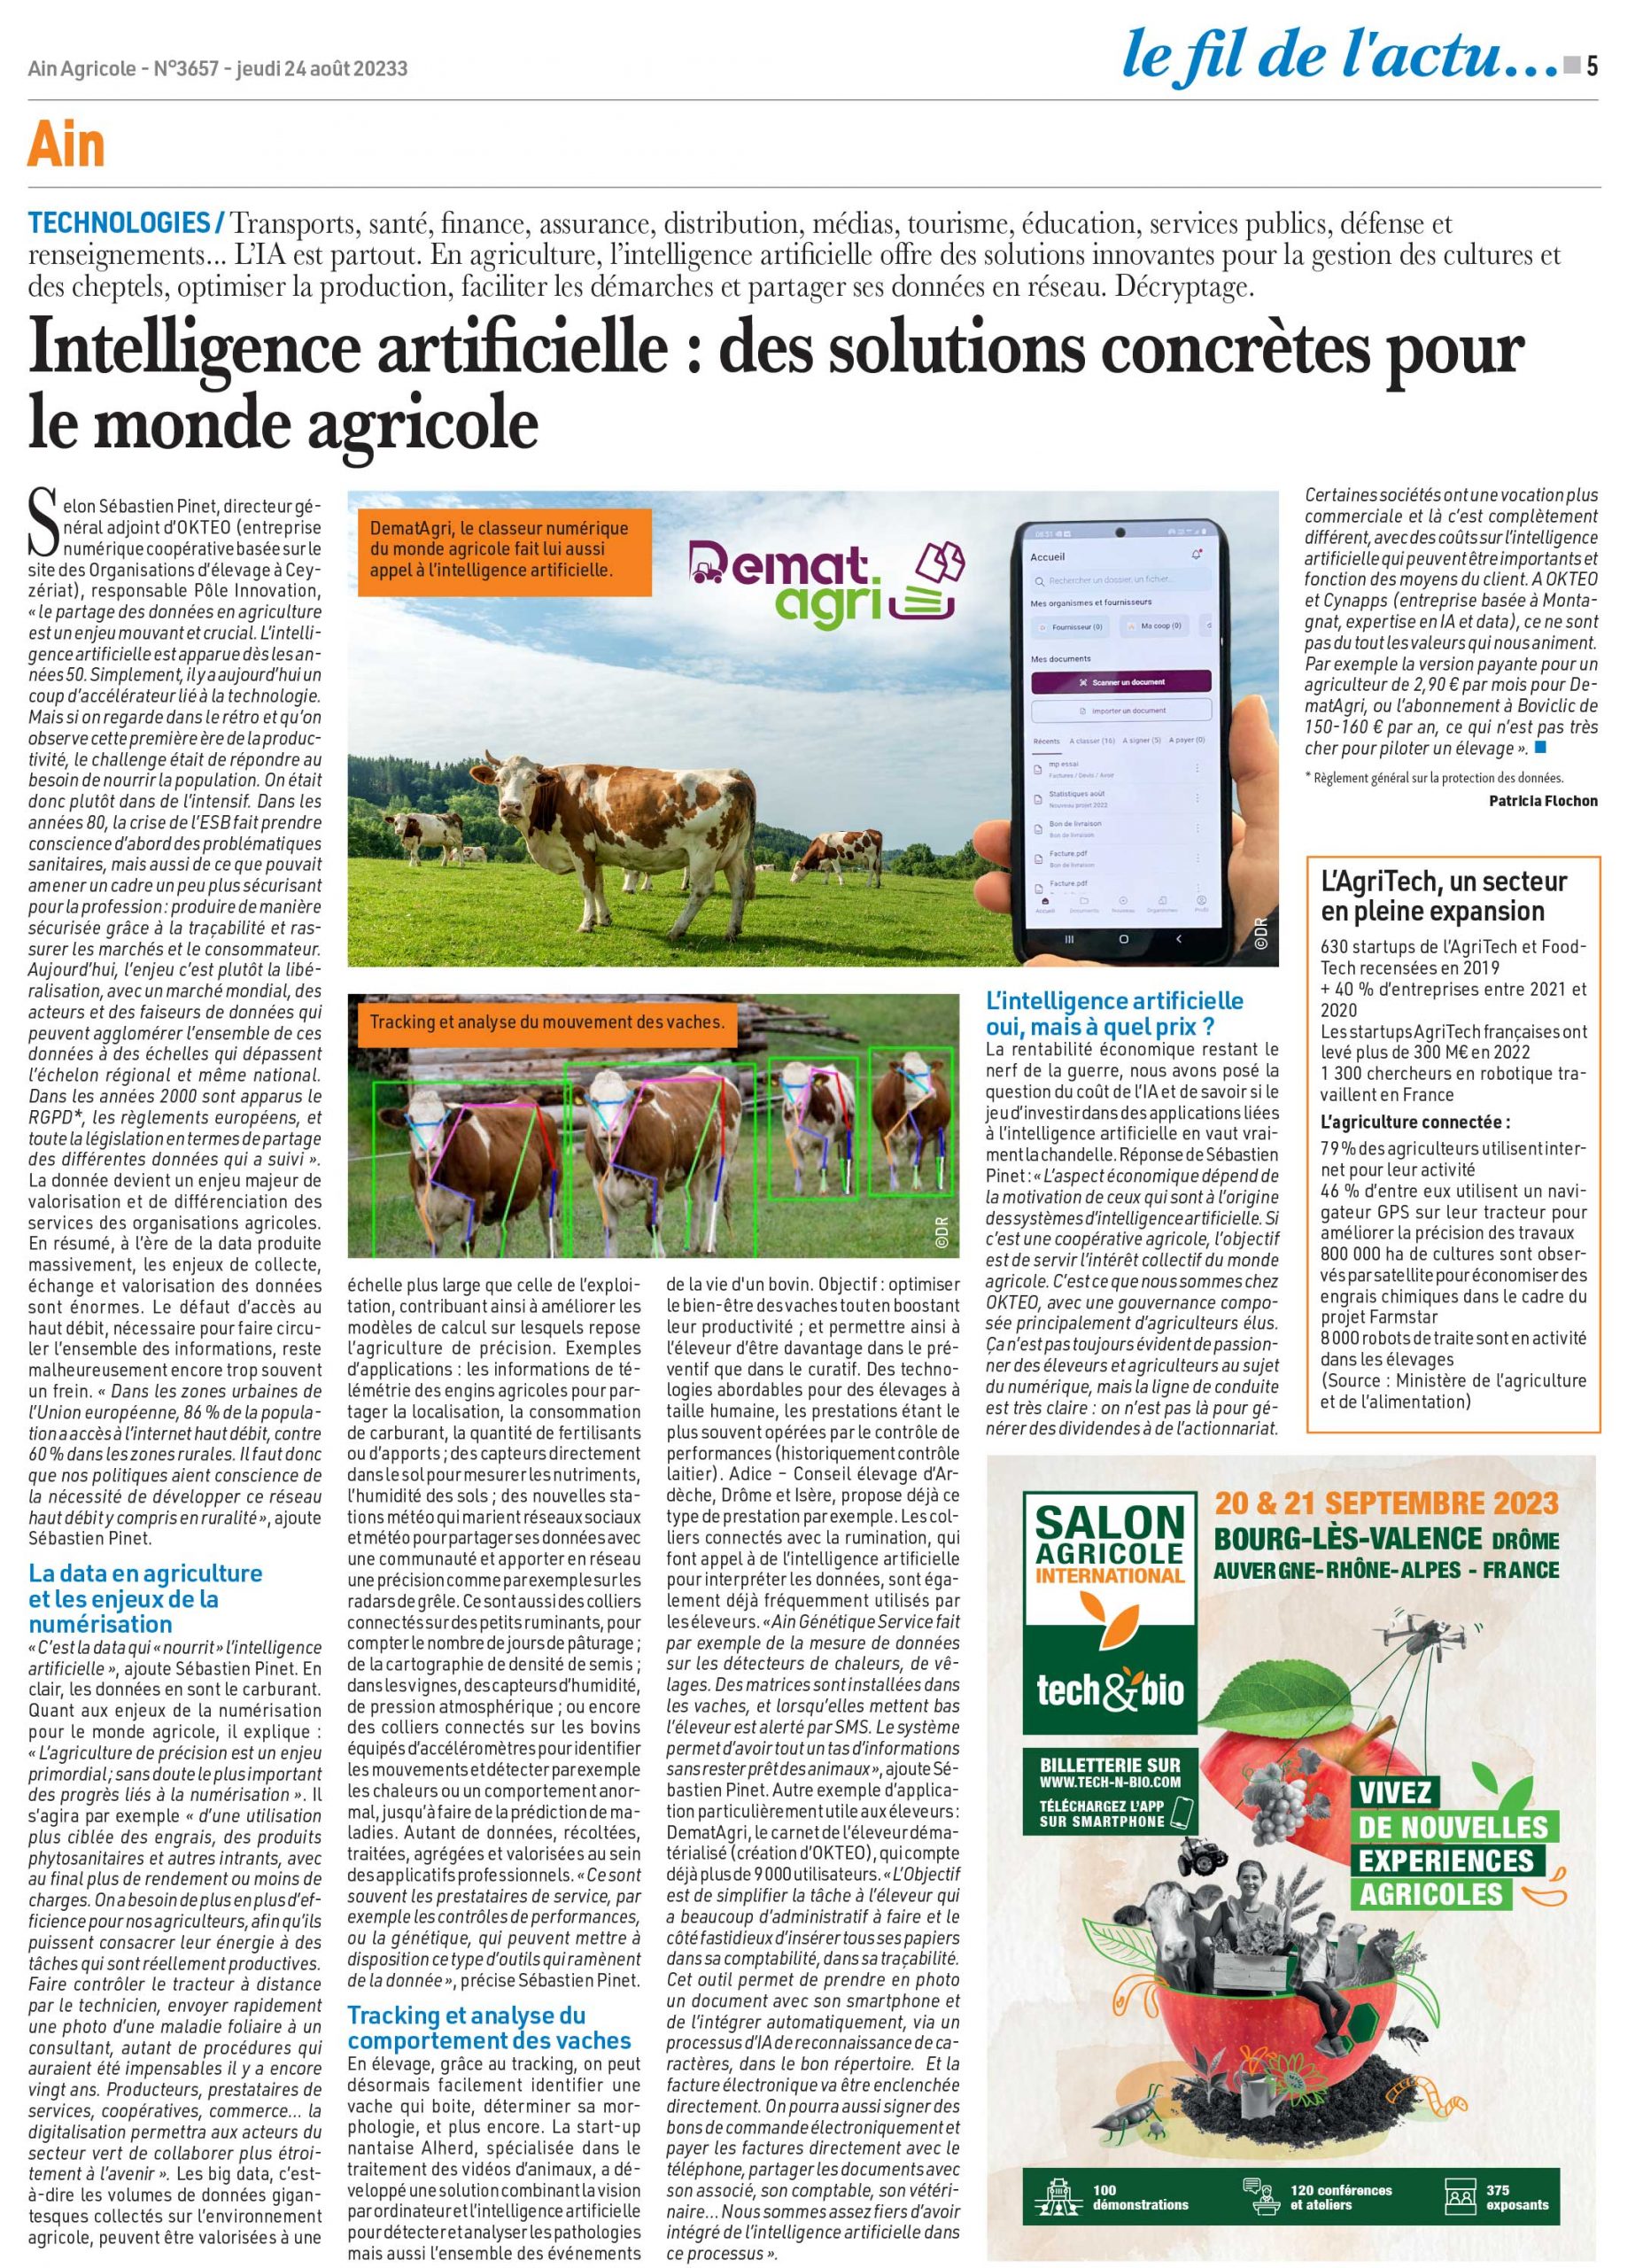 Intelligence artificielle : des solutions concrètes pour le monde agricole